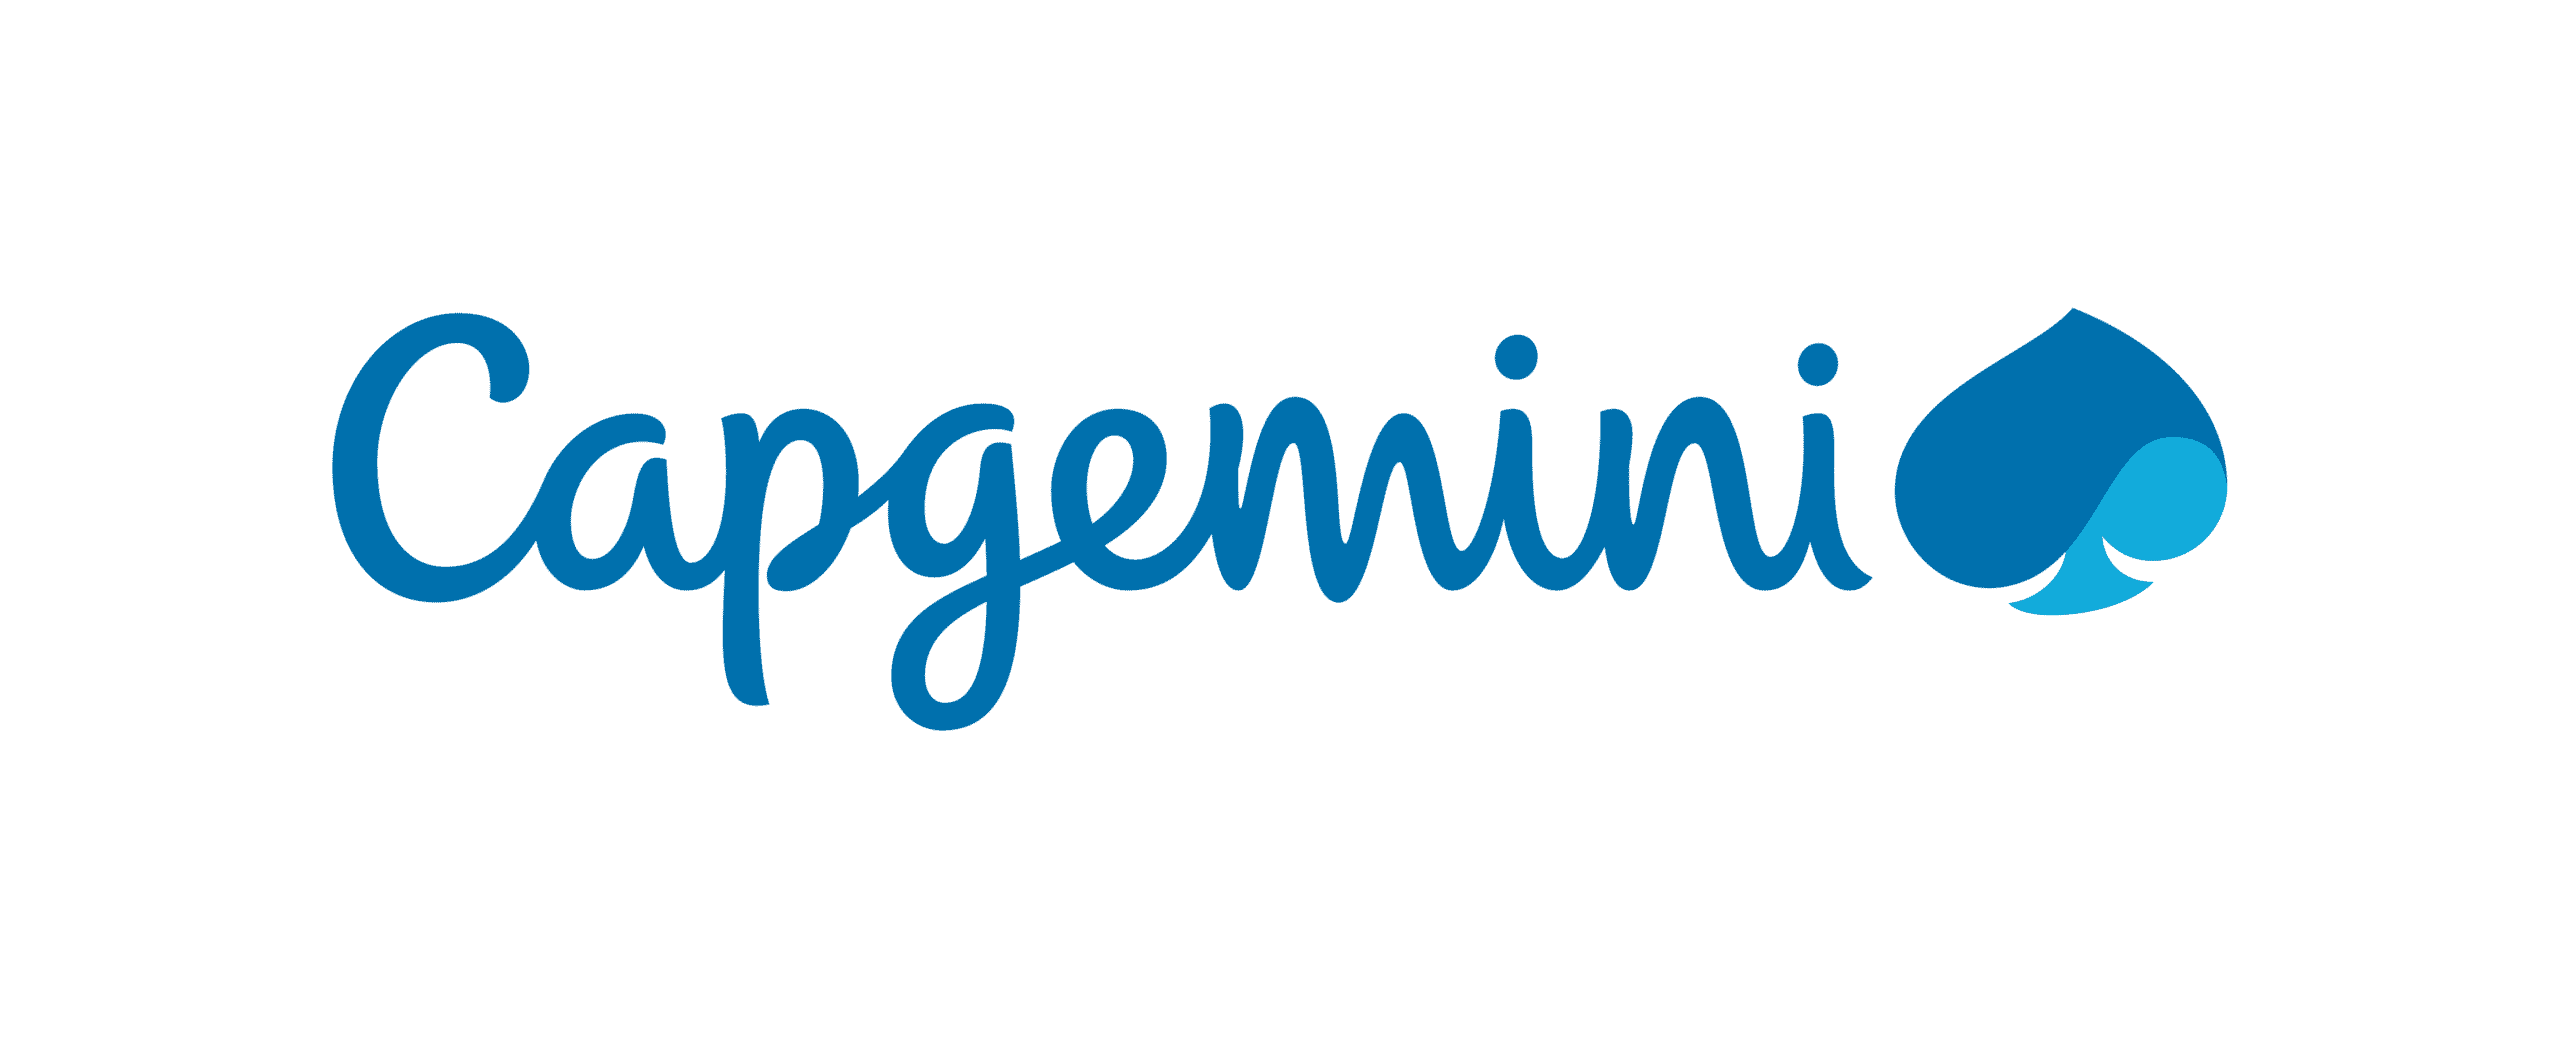 The logo for Capgemini